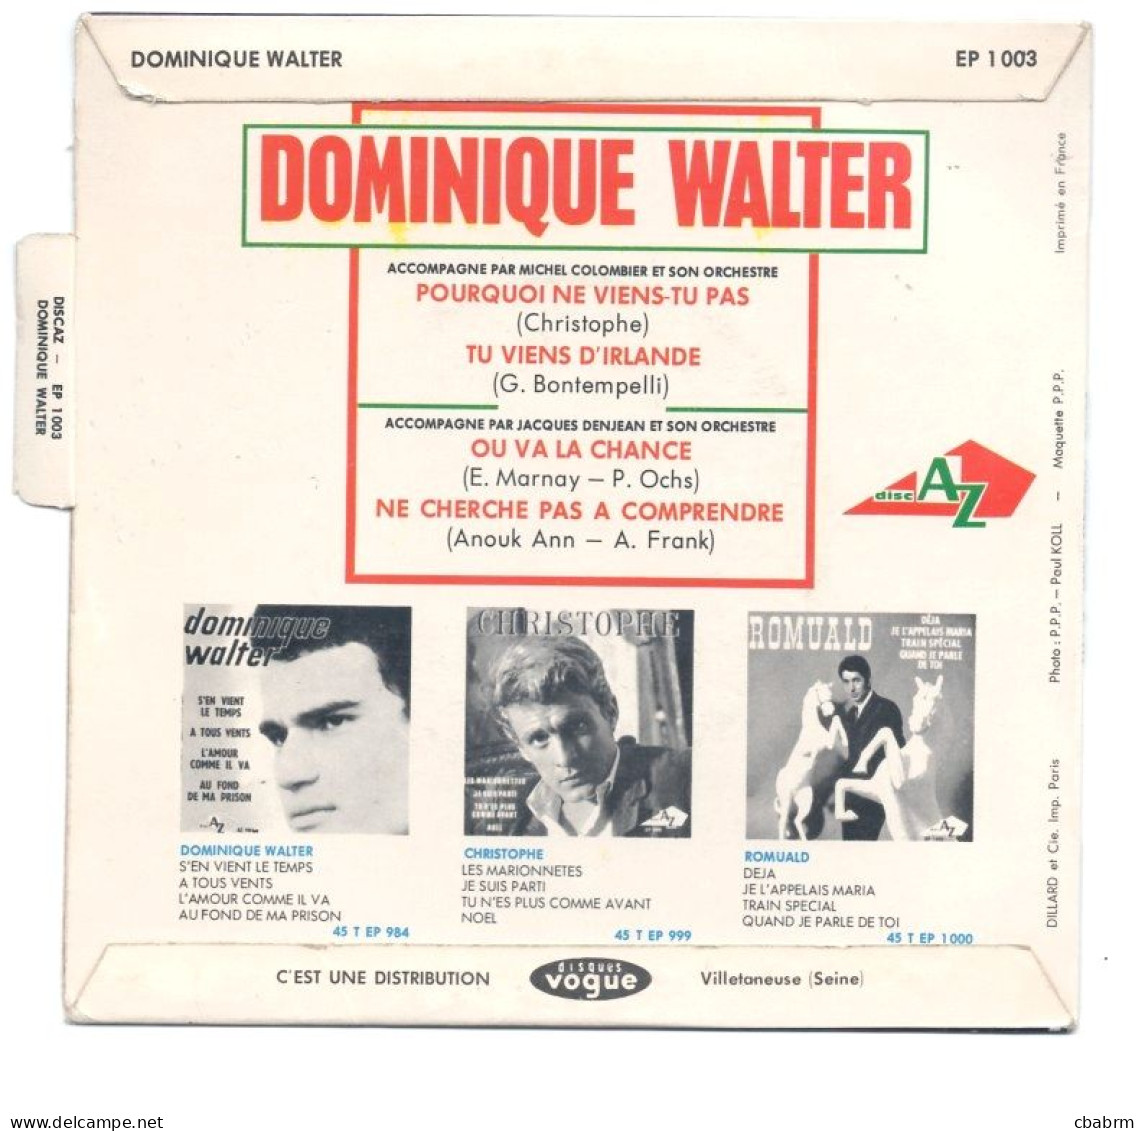 EP 45 TOURS DOMINIQUE WALTER POURQUOI NE VIENS-TU PAS ( Christophe ) LANGUETTE - Autres - Musique Française